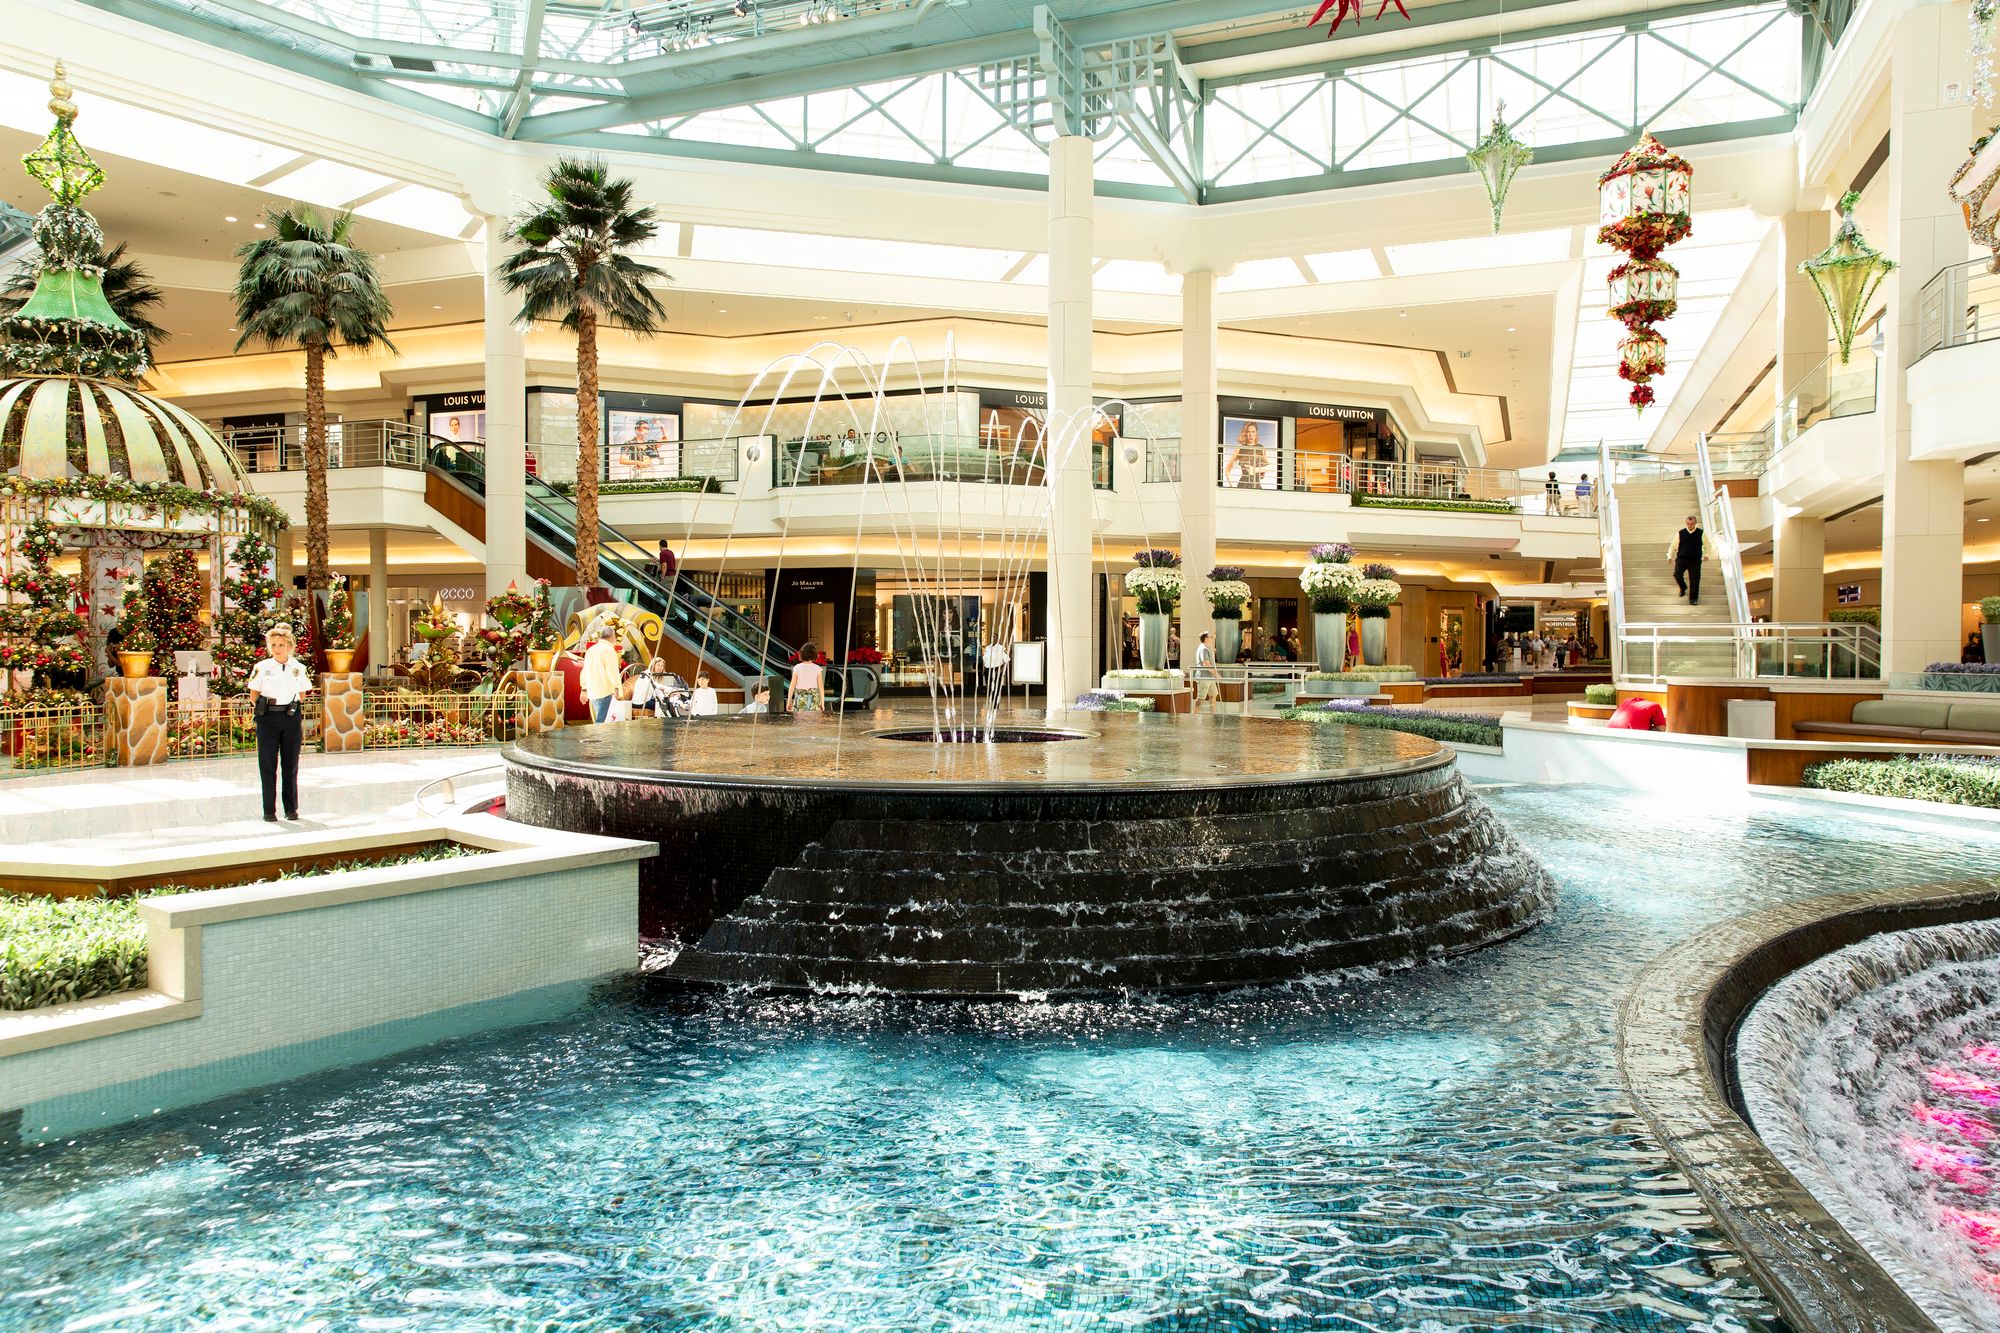 Gardens Mall -ostoskeskus on viihtyisä ja ylellinenkin ostos- ja ajanvietto­paikka palmu­istutuksineen ja vesialtaineen. © Tommi Tuomi